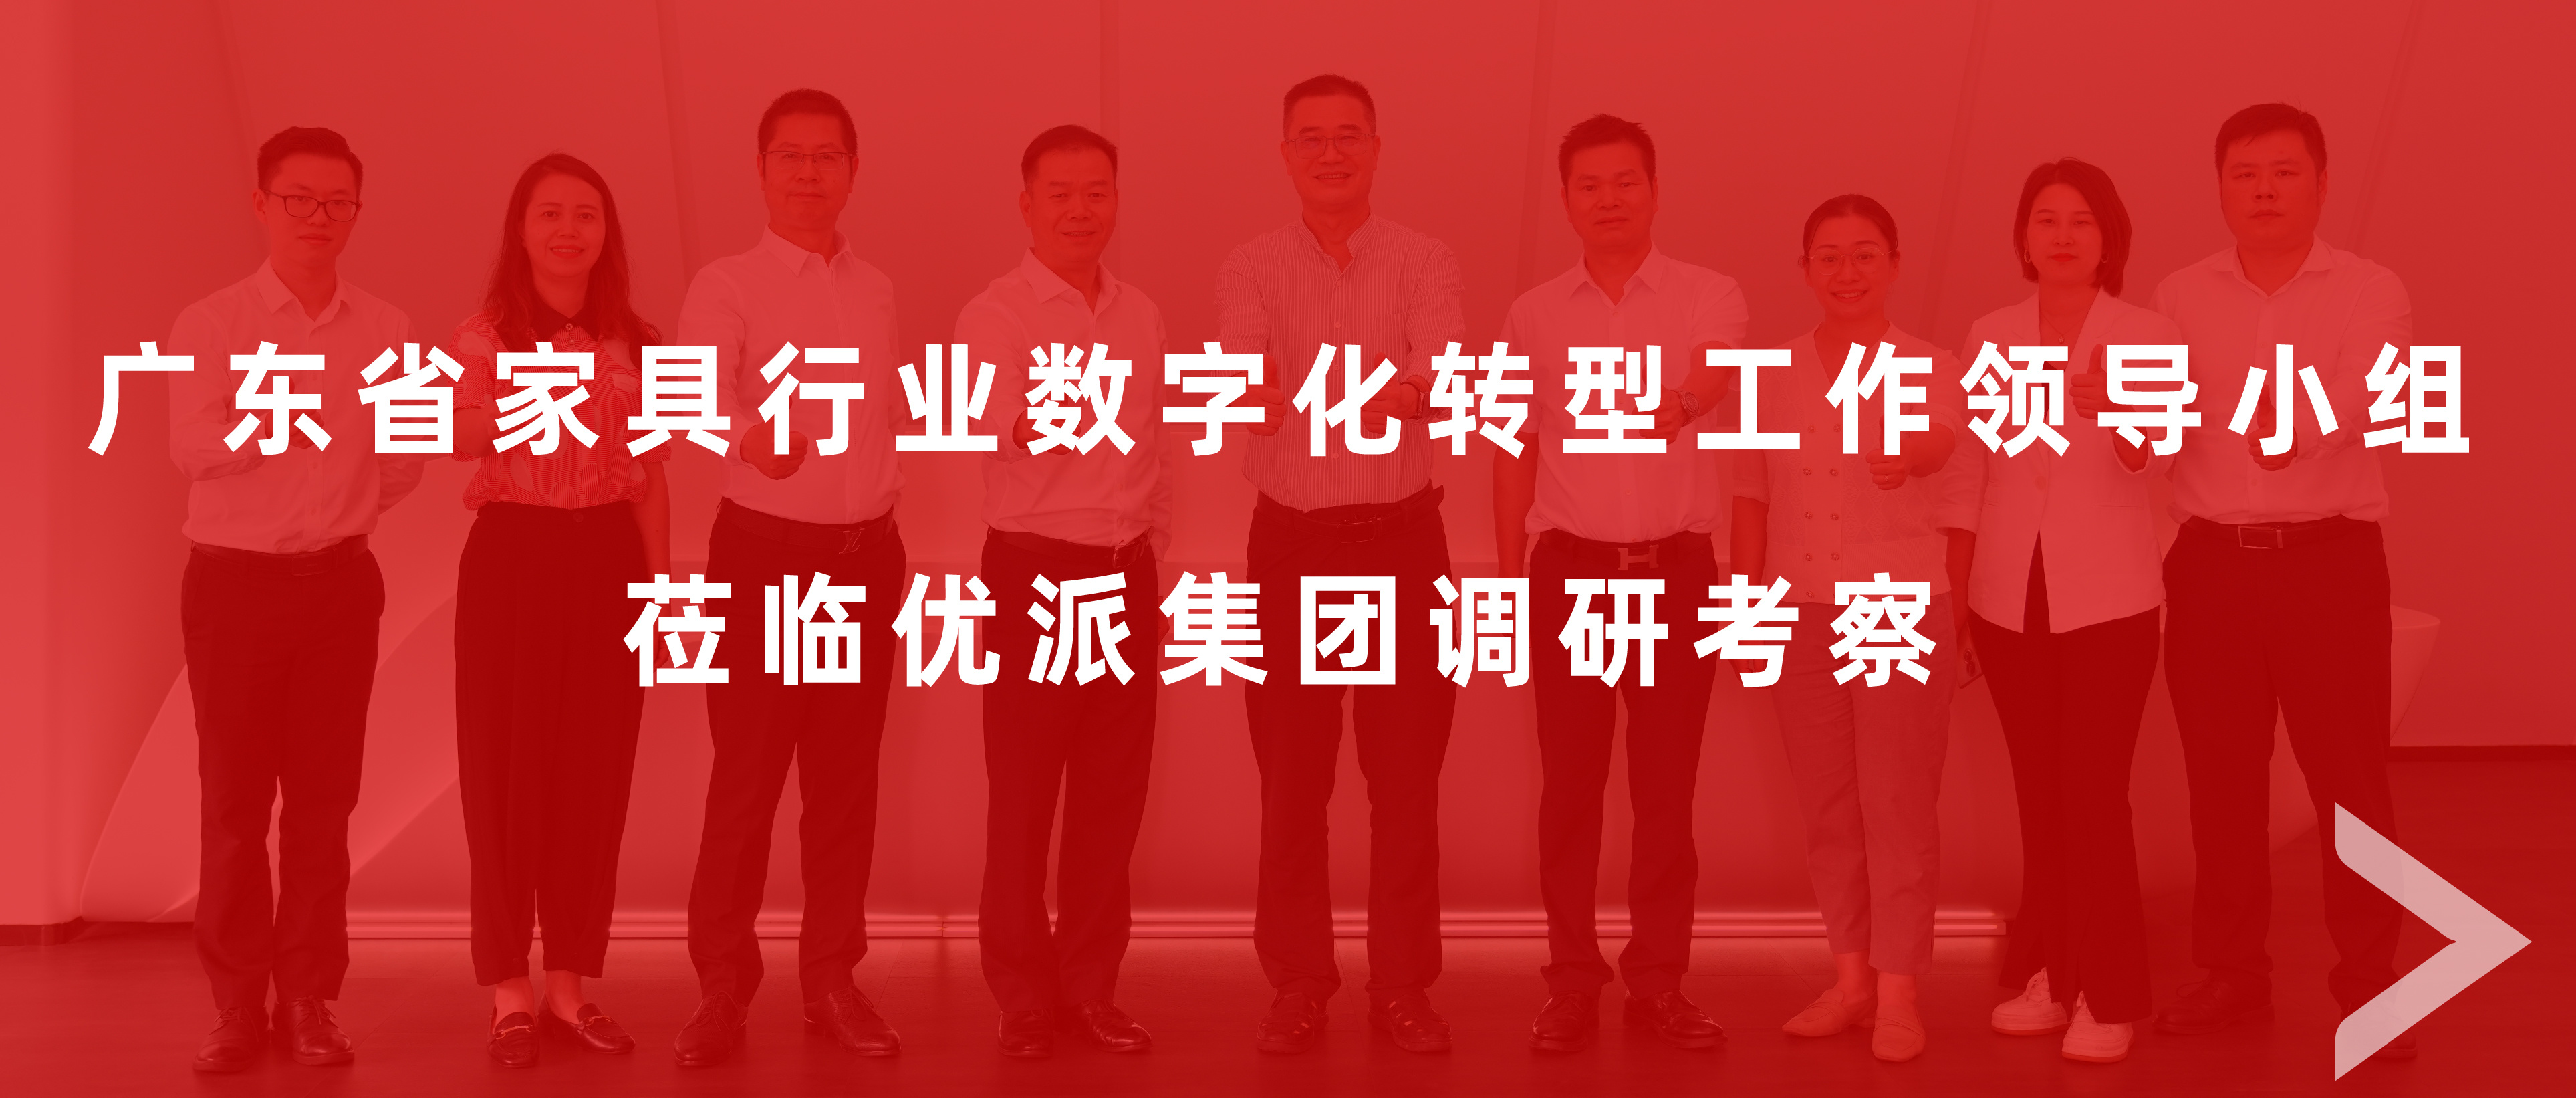 广东省家具行业数字化转型工作领导小组莅临9170在线登录金沙集团调研考察